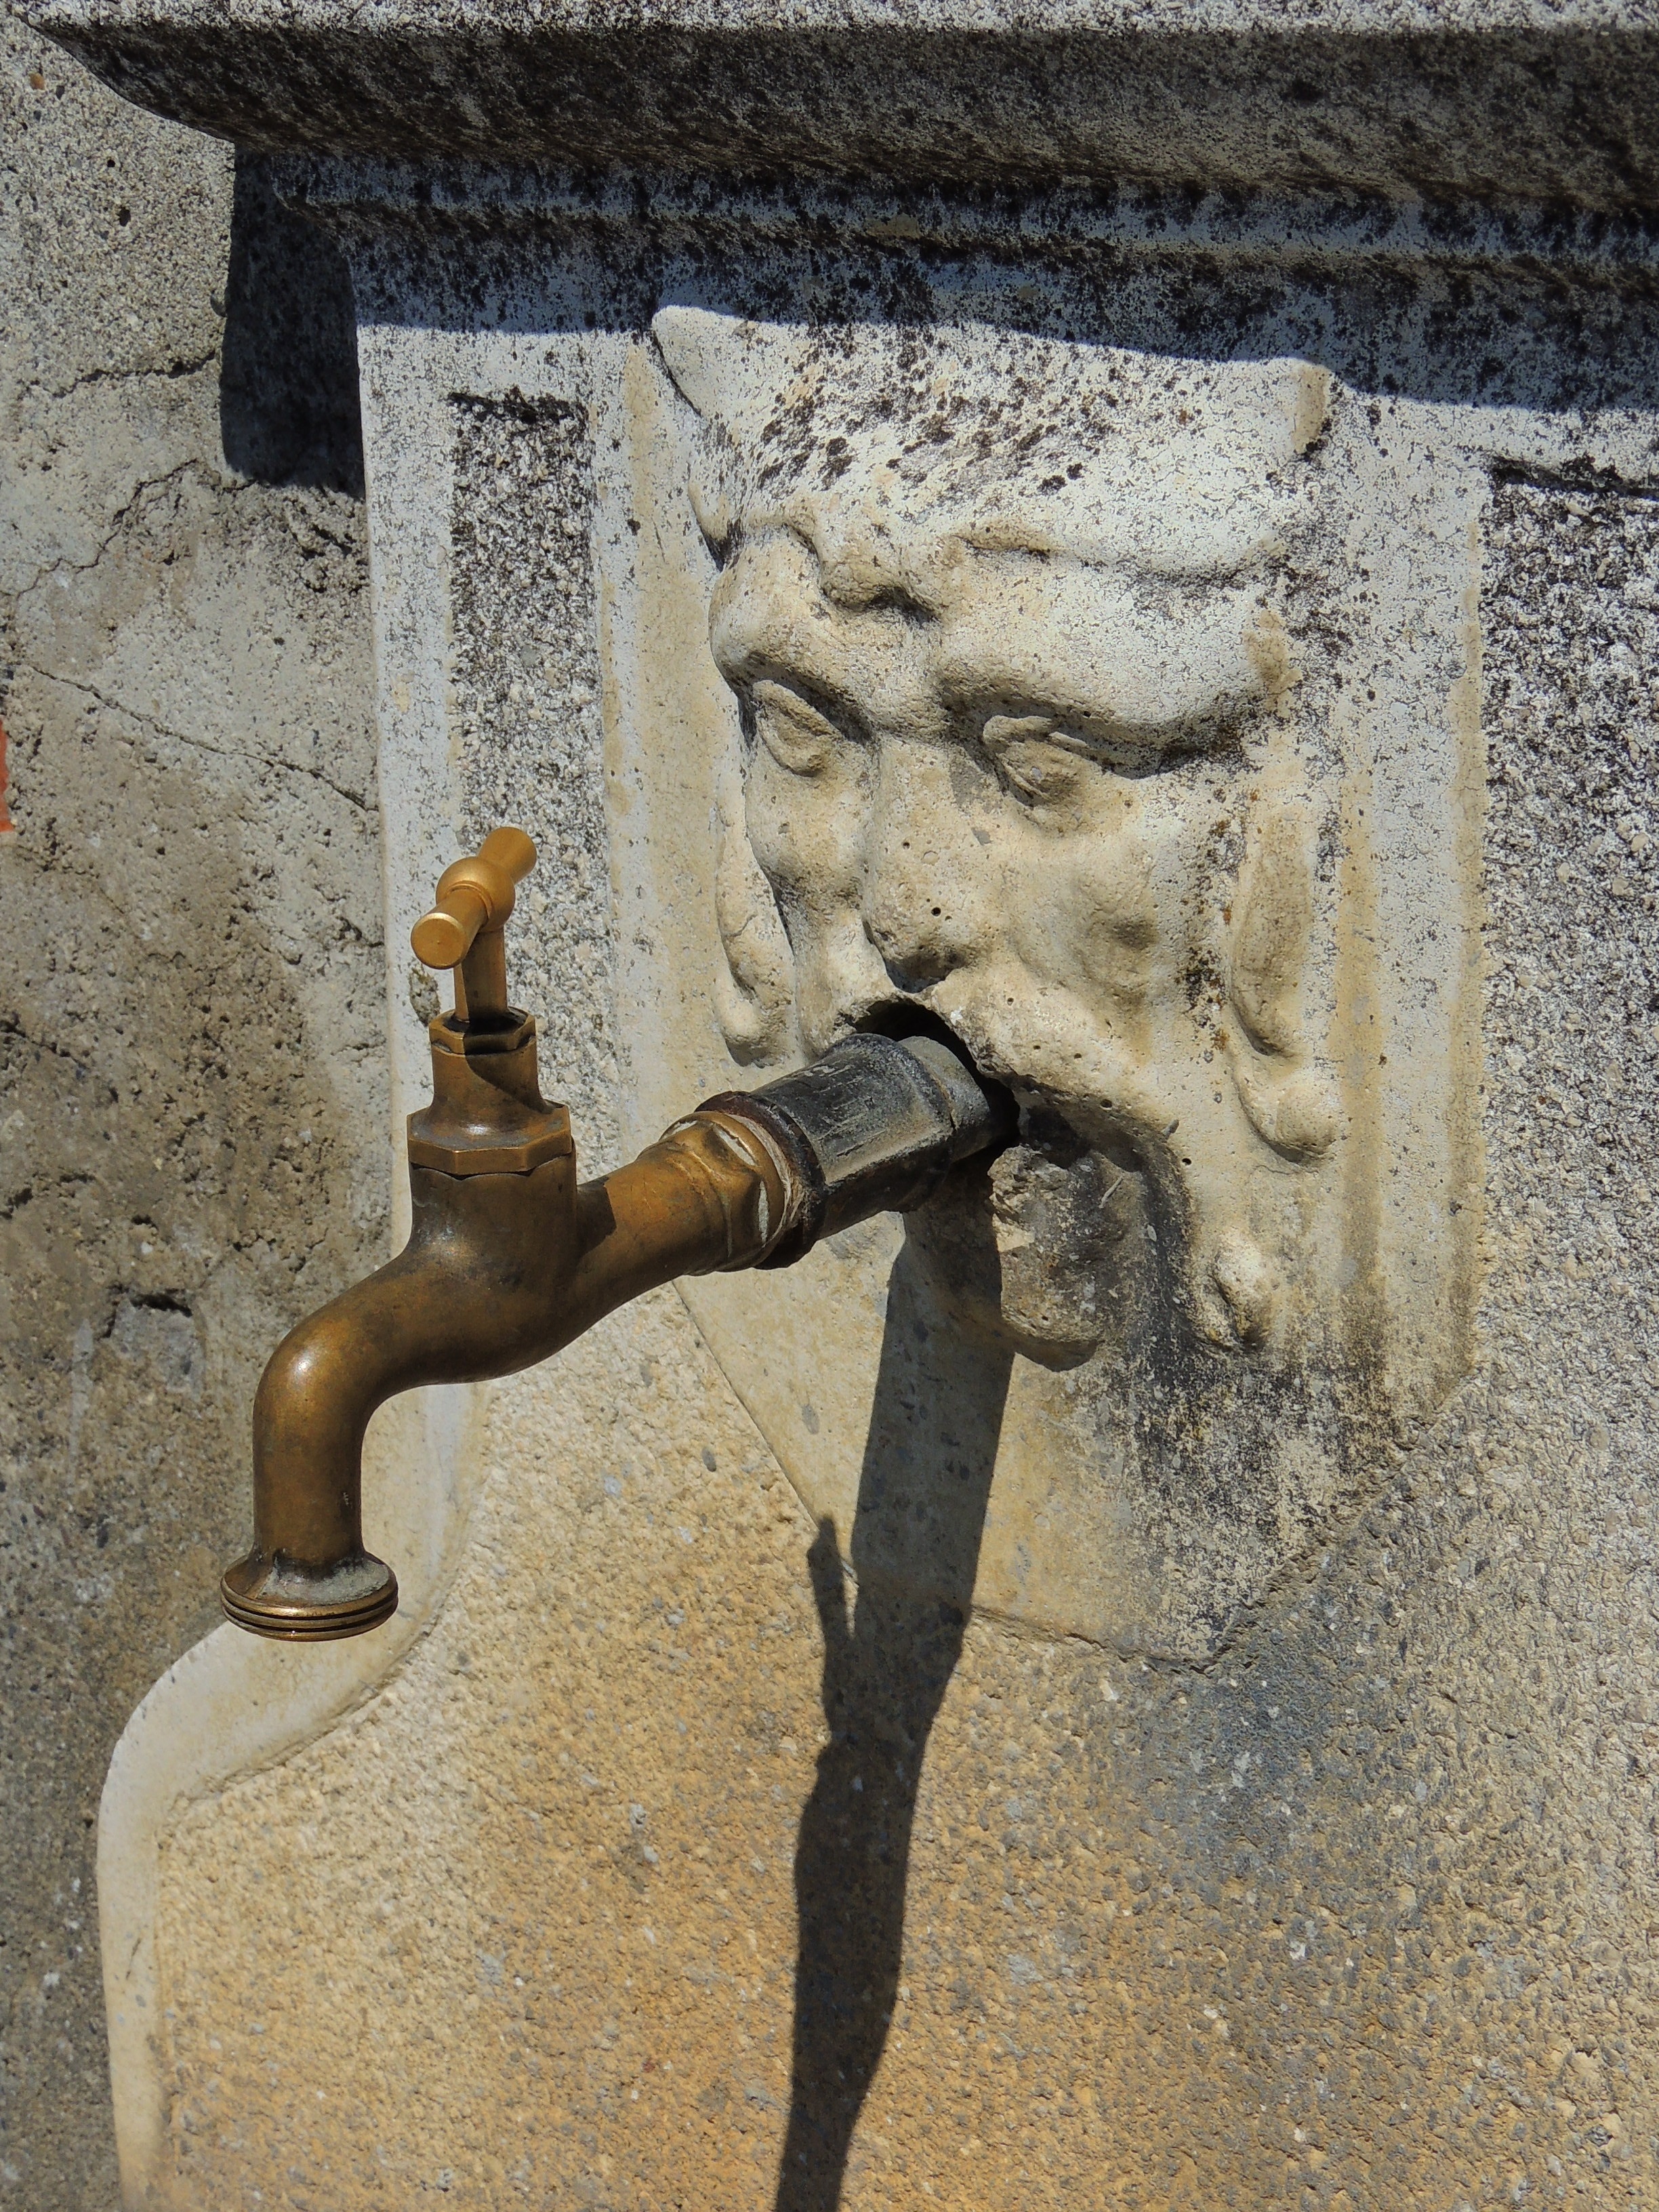 brass faucet